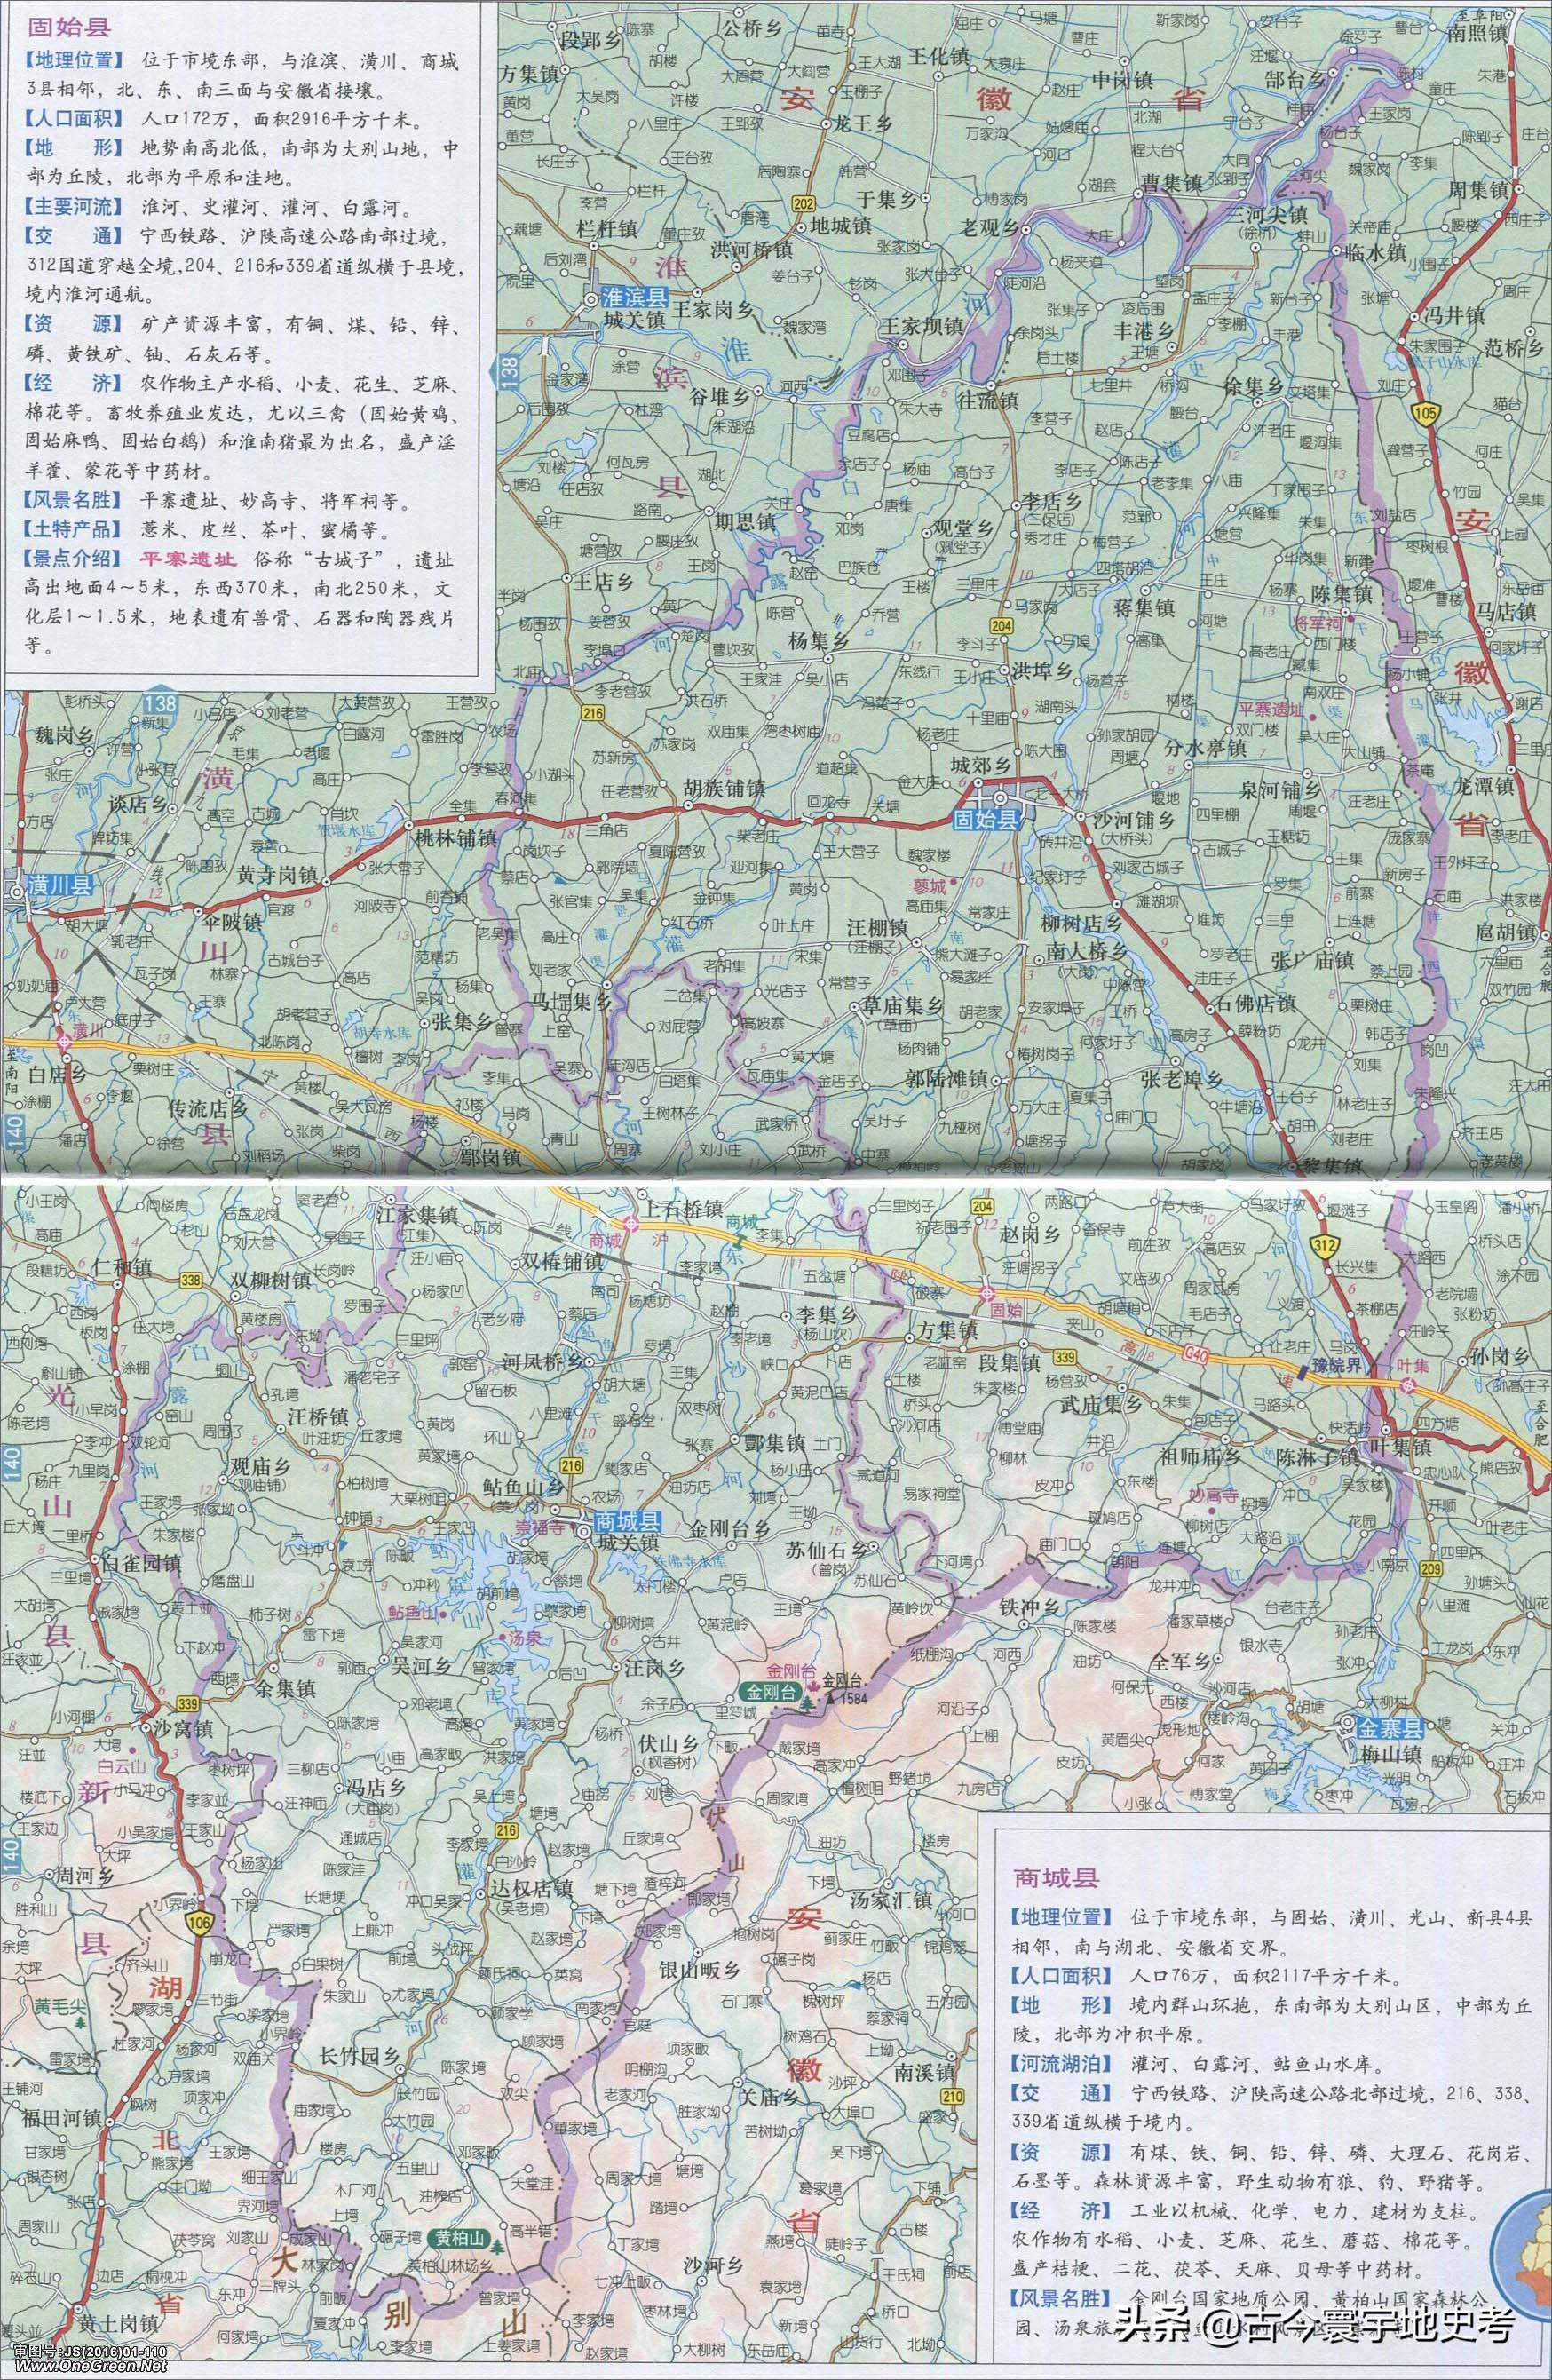 潢川红玺台公园地图图片